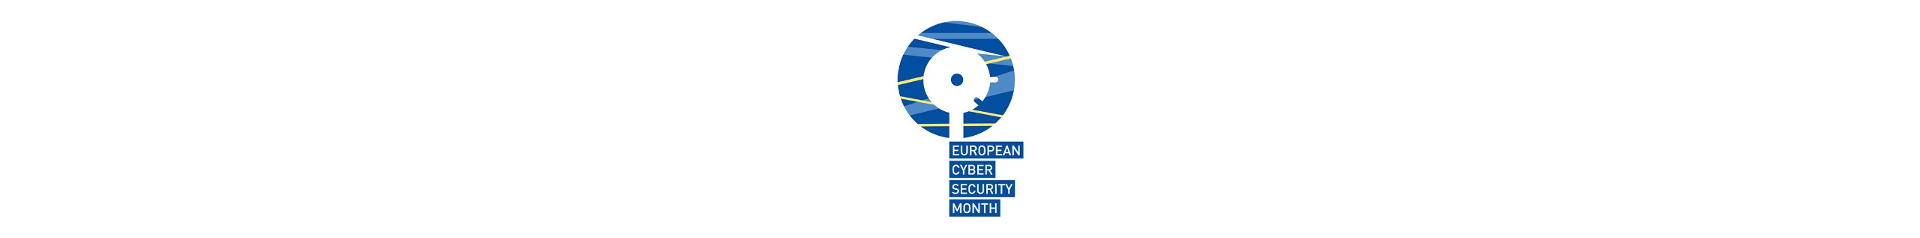 Imagen de mes europeo de la ciberseguridad